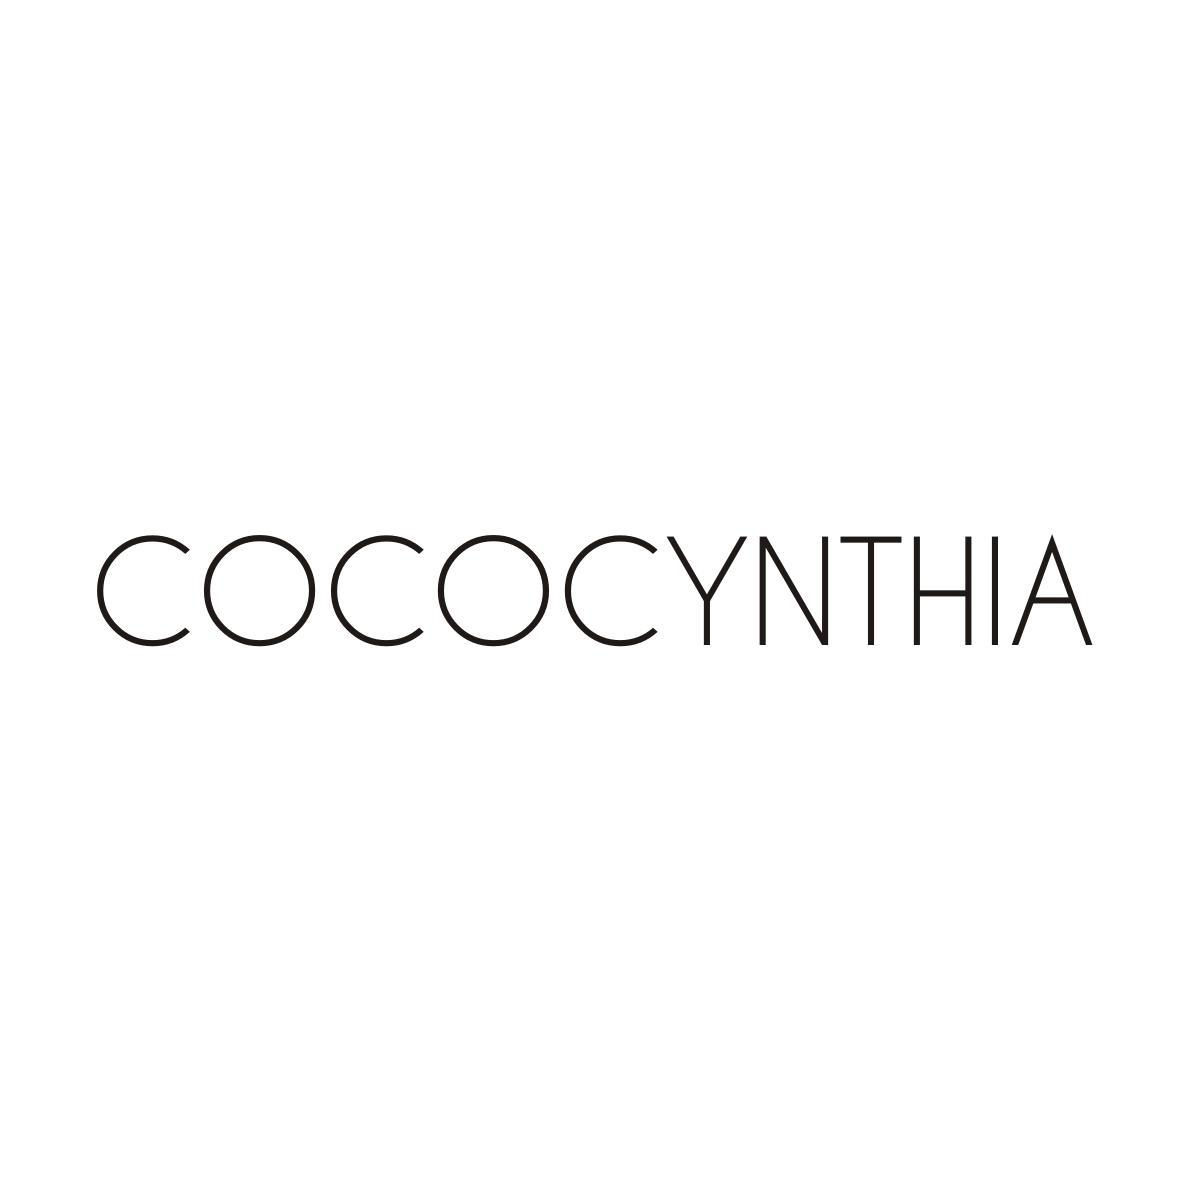 COCOCYNTHIA